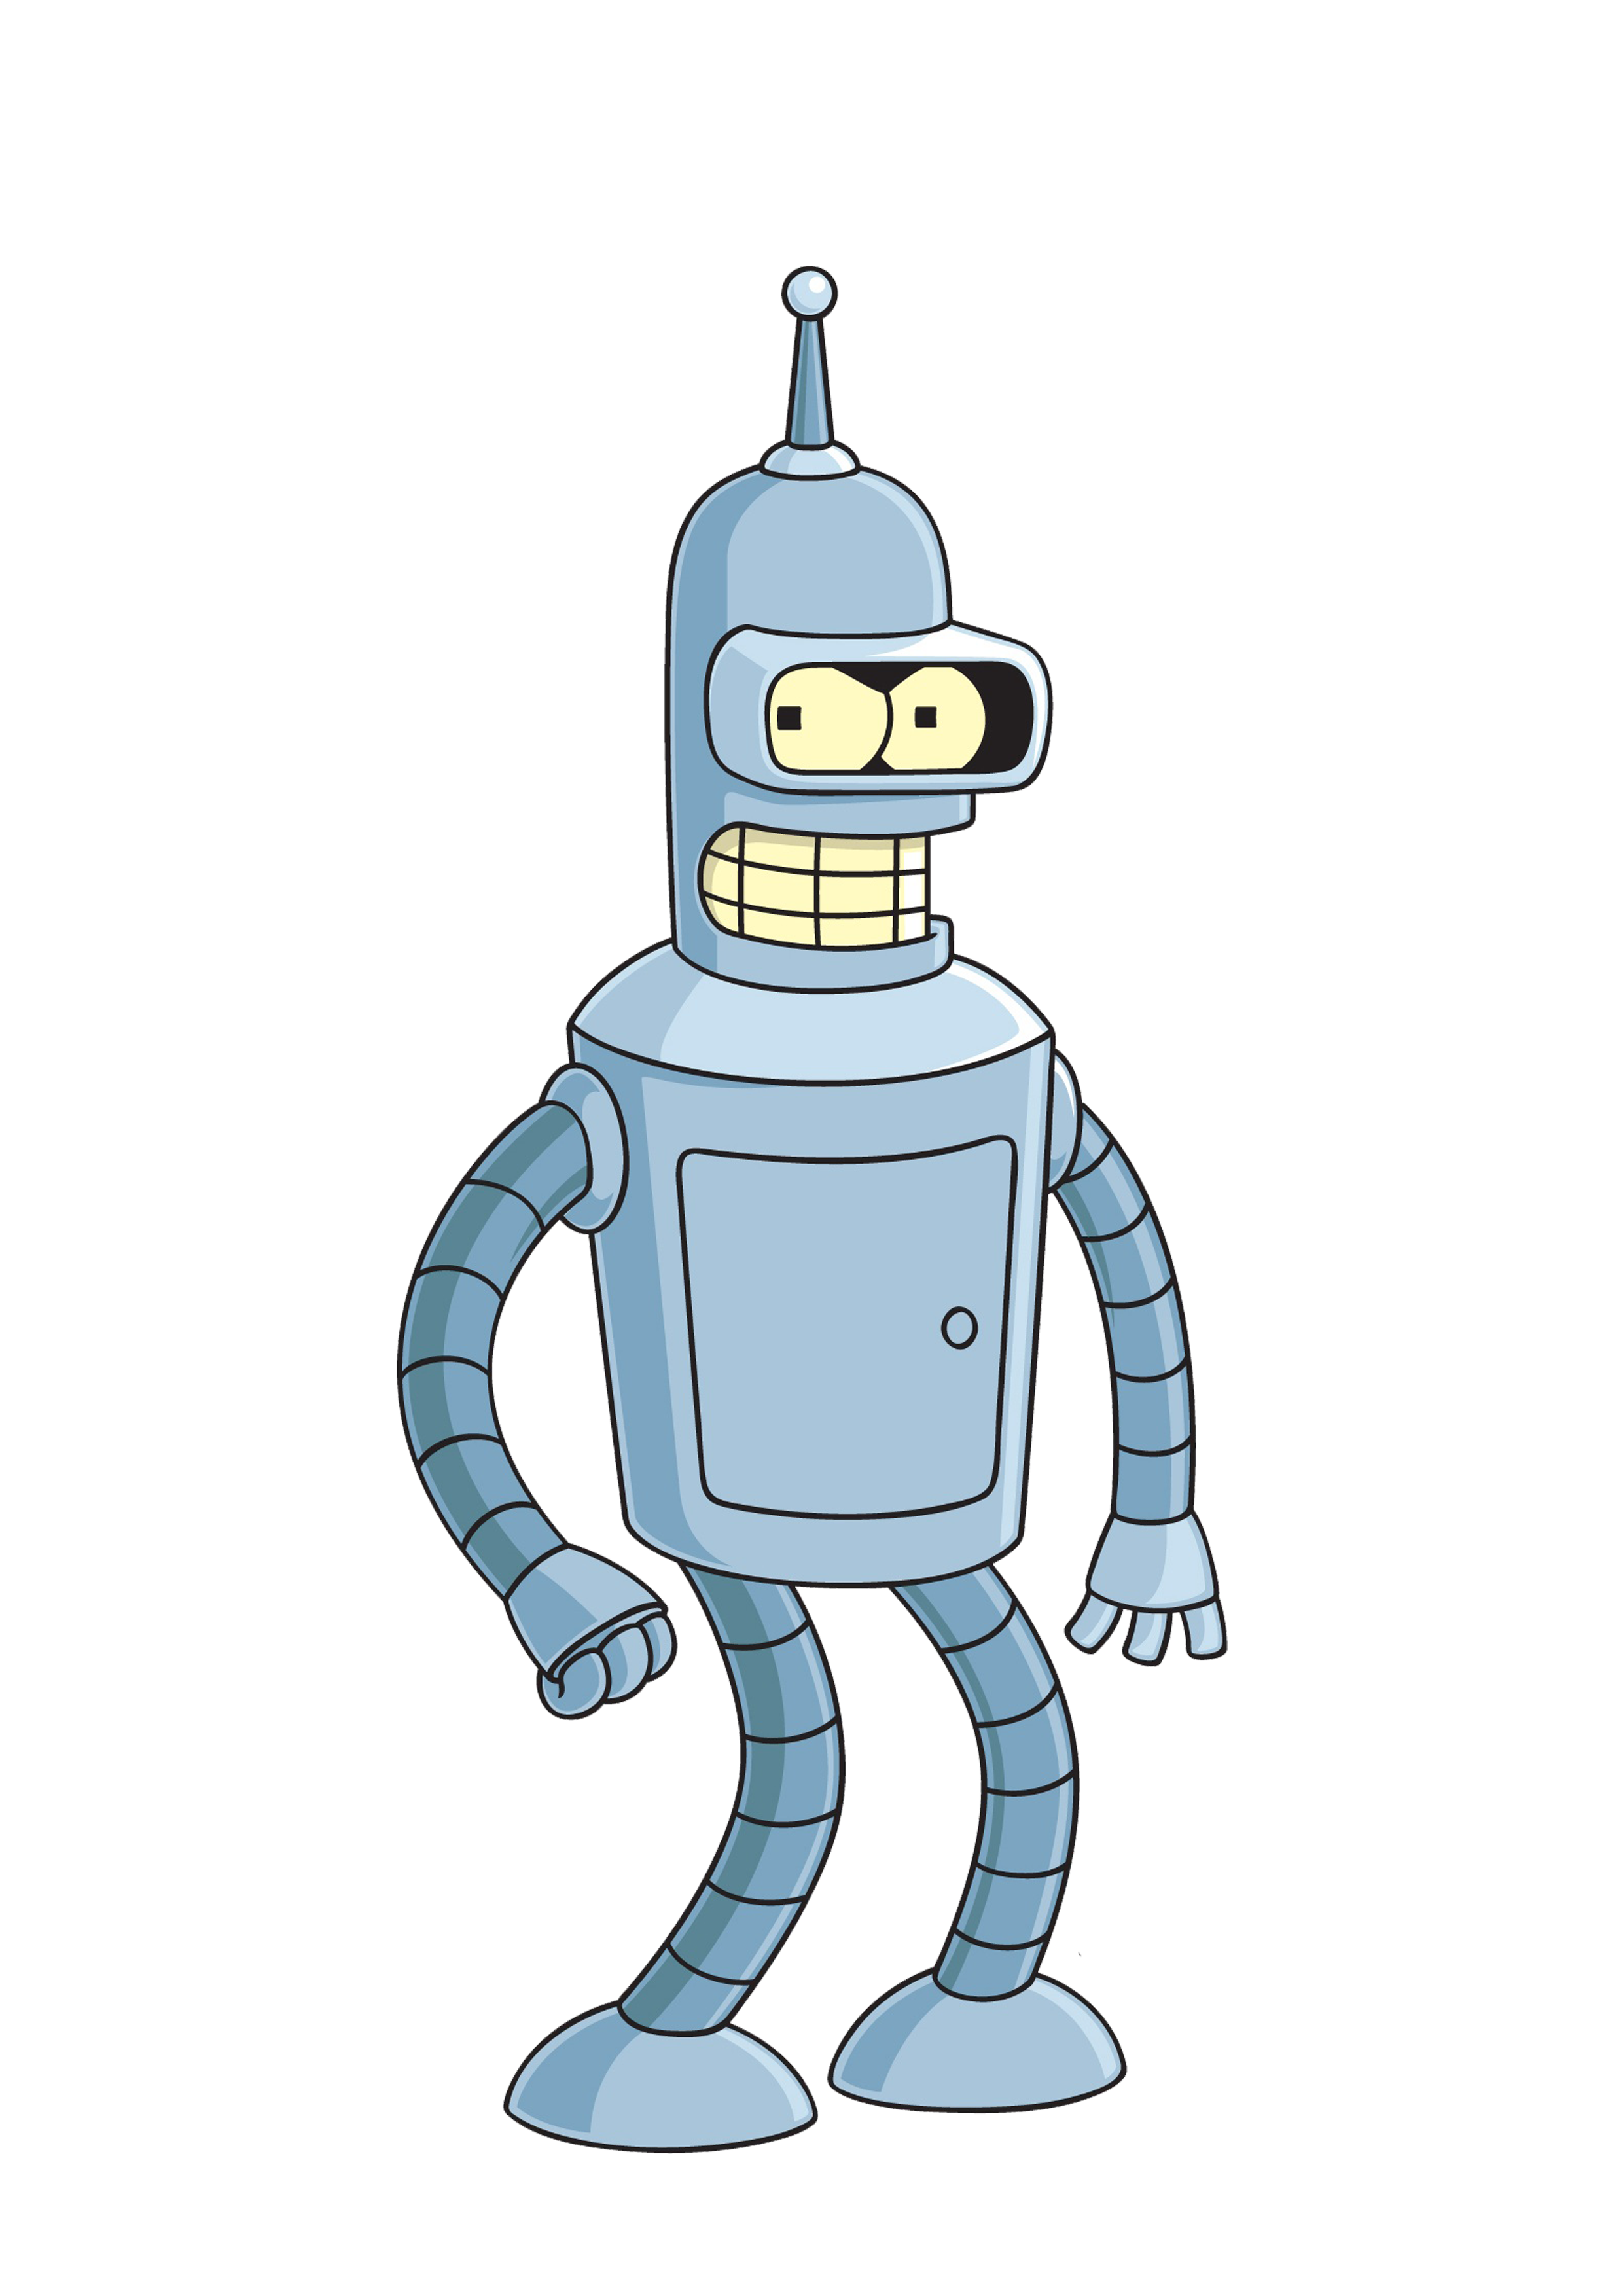 Futurama Robot Bender Free HD Image PNG Image